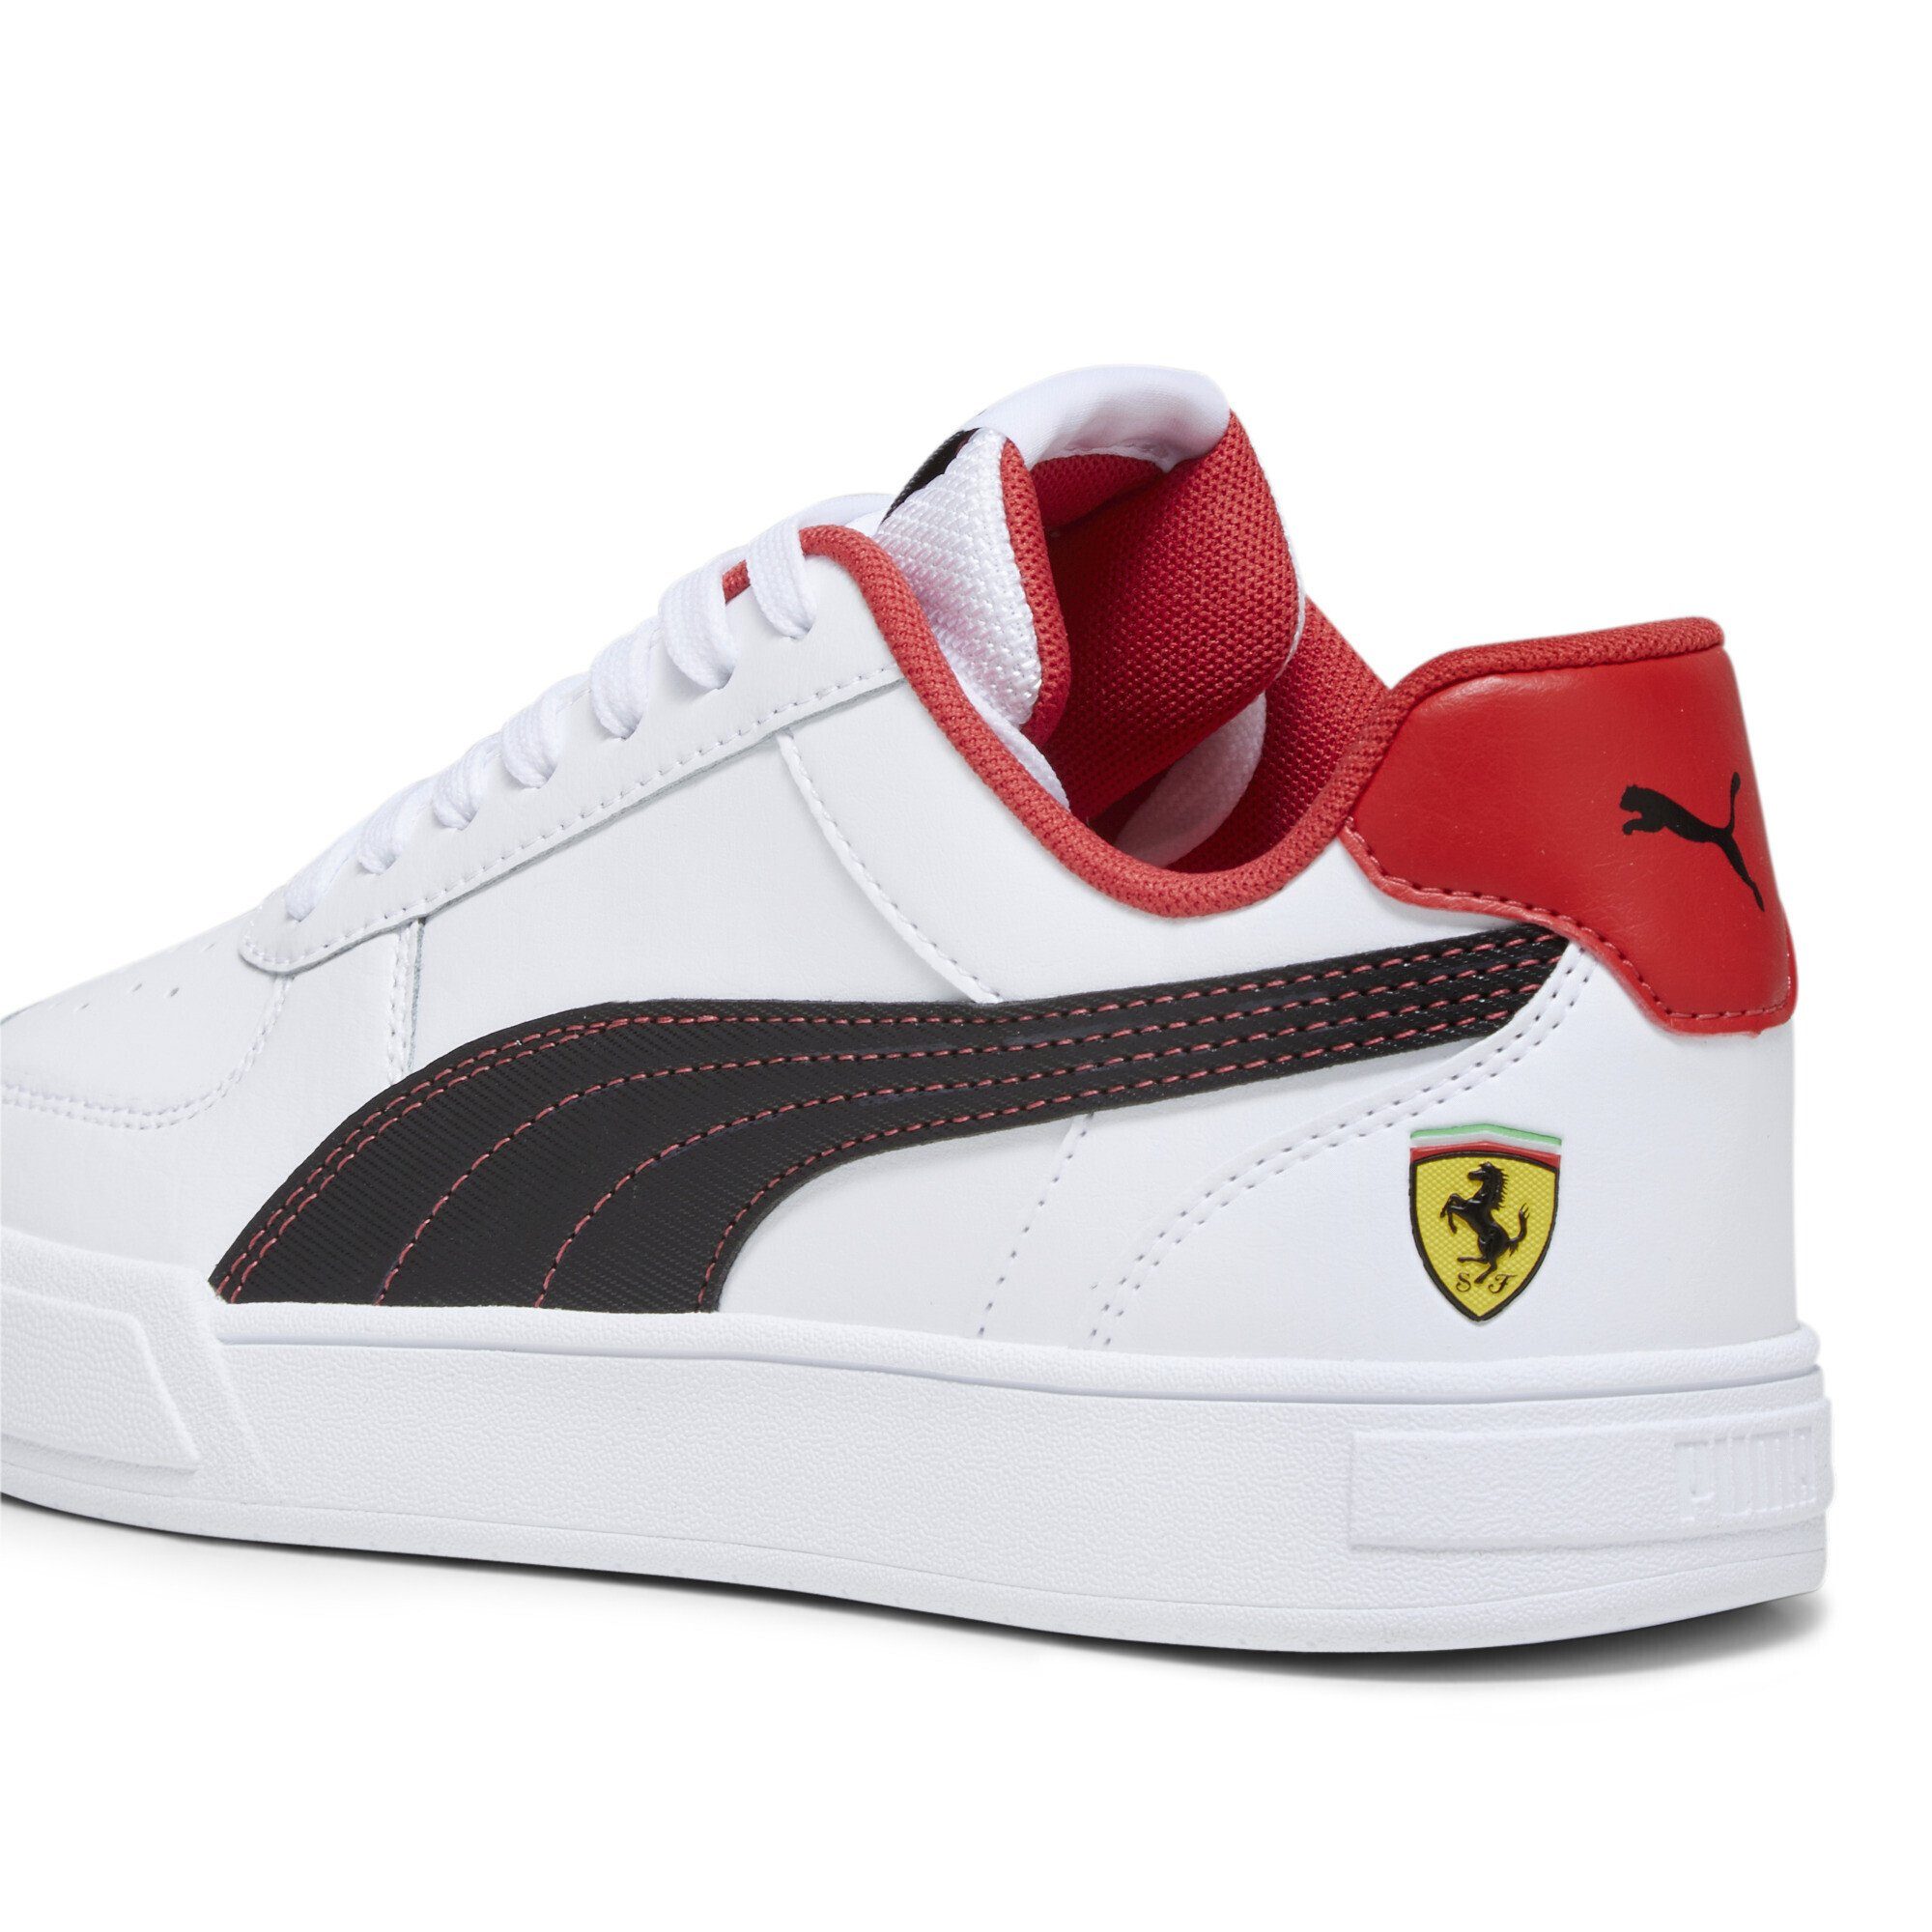 PUMA Scuderia Ferrari Caven Sneakers Sneaker, Perforation am Zehenbereich Jugendliche